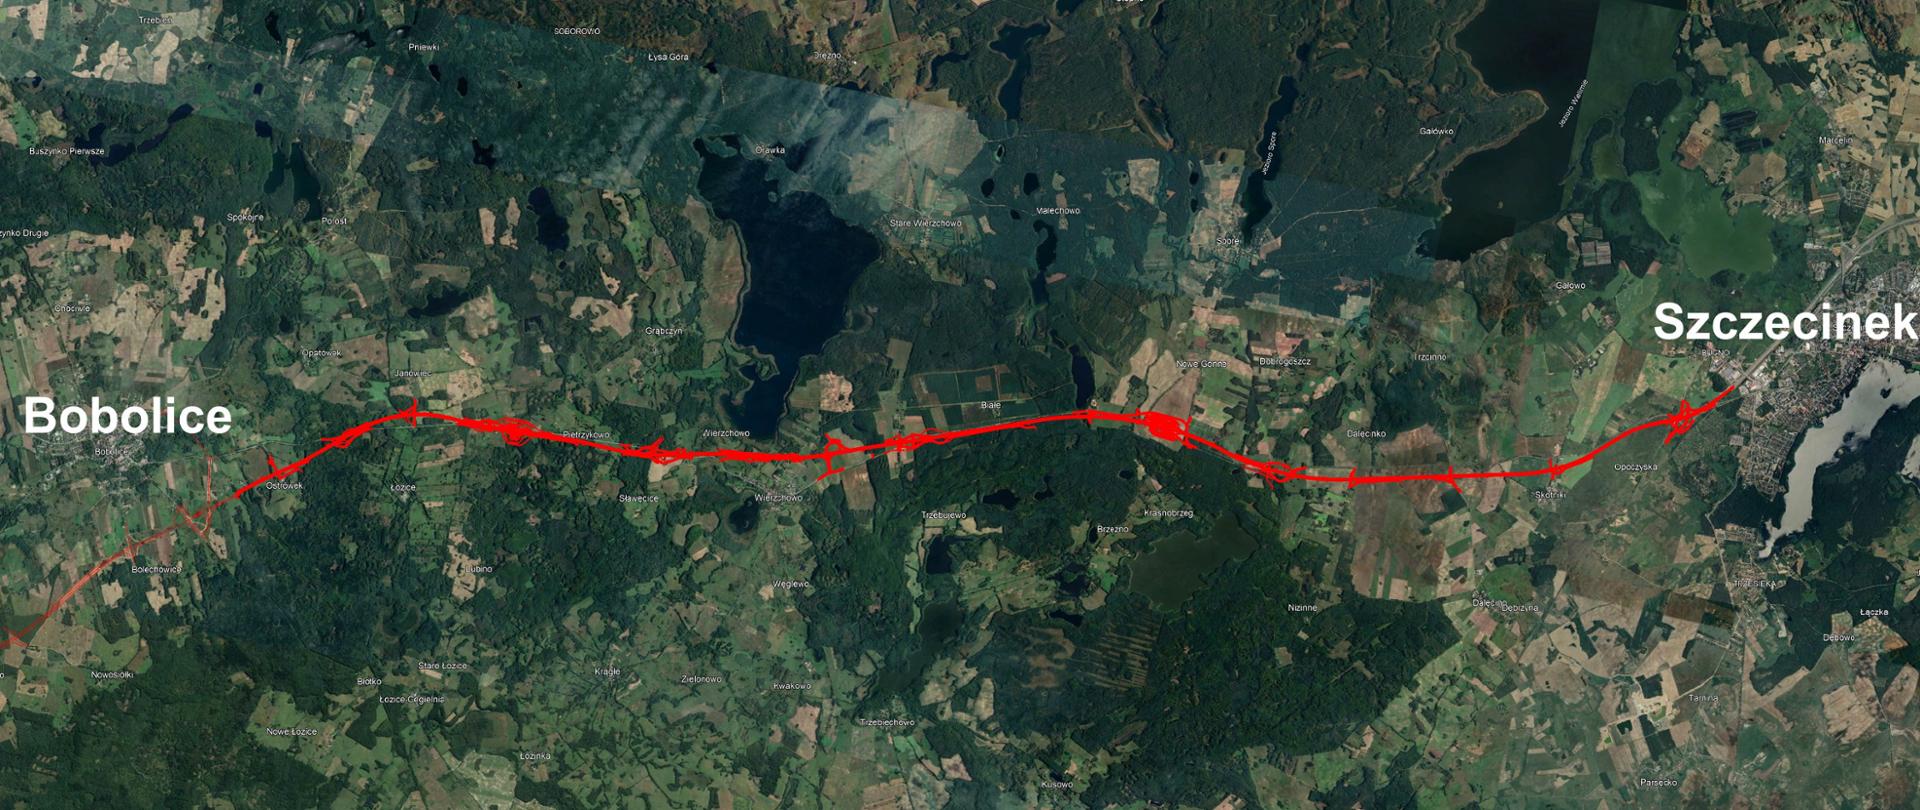 Zdjęcie satelitarne przedstawiające przebieg odcinka drogi ekspresowej S11 Bobolice - Szczecinek. Na teren naniesiono czerwoną linię przedstawiającą przyszłą drogę. Na zdjęciu widoczny z dużej wysokości teren - lasy, pola, miejscowości i większe miasta.